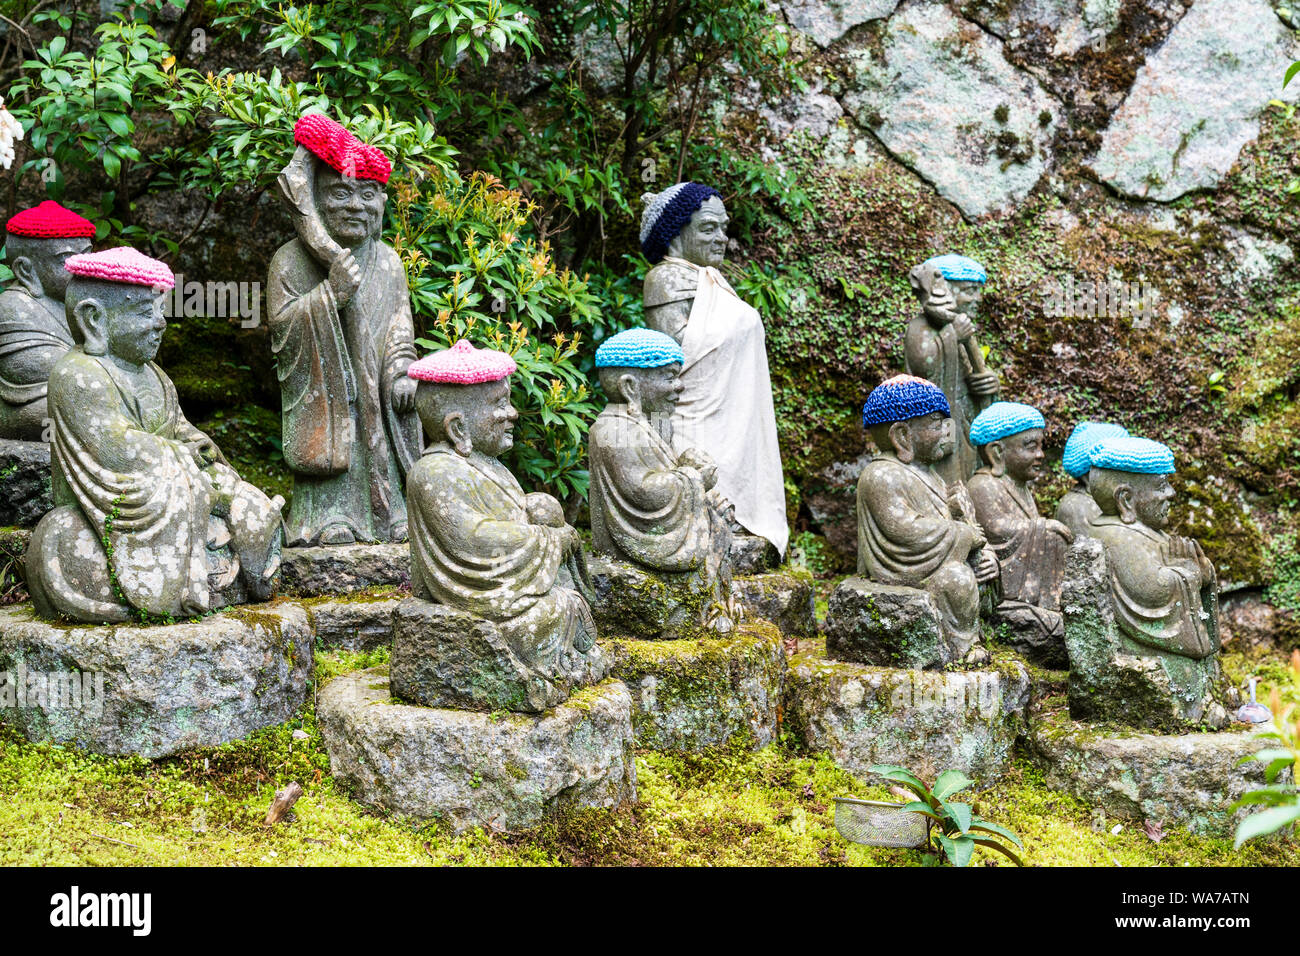 Giappone, Miyajima. Rakan piccole statue di monaci buddisti, discepoli di Shaka, rivestimento gradino di pietra percorso attraverso l'entrata del Daisho-nel tempio. Foto Stock